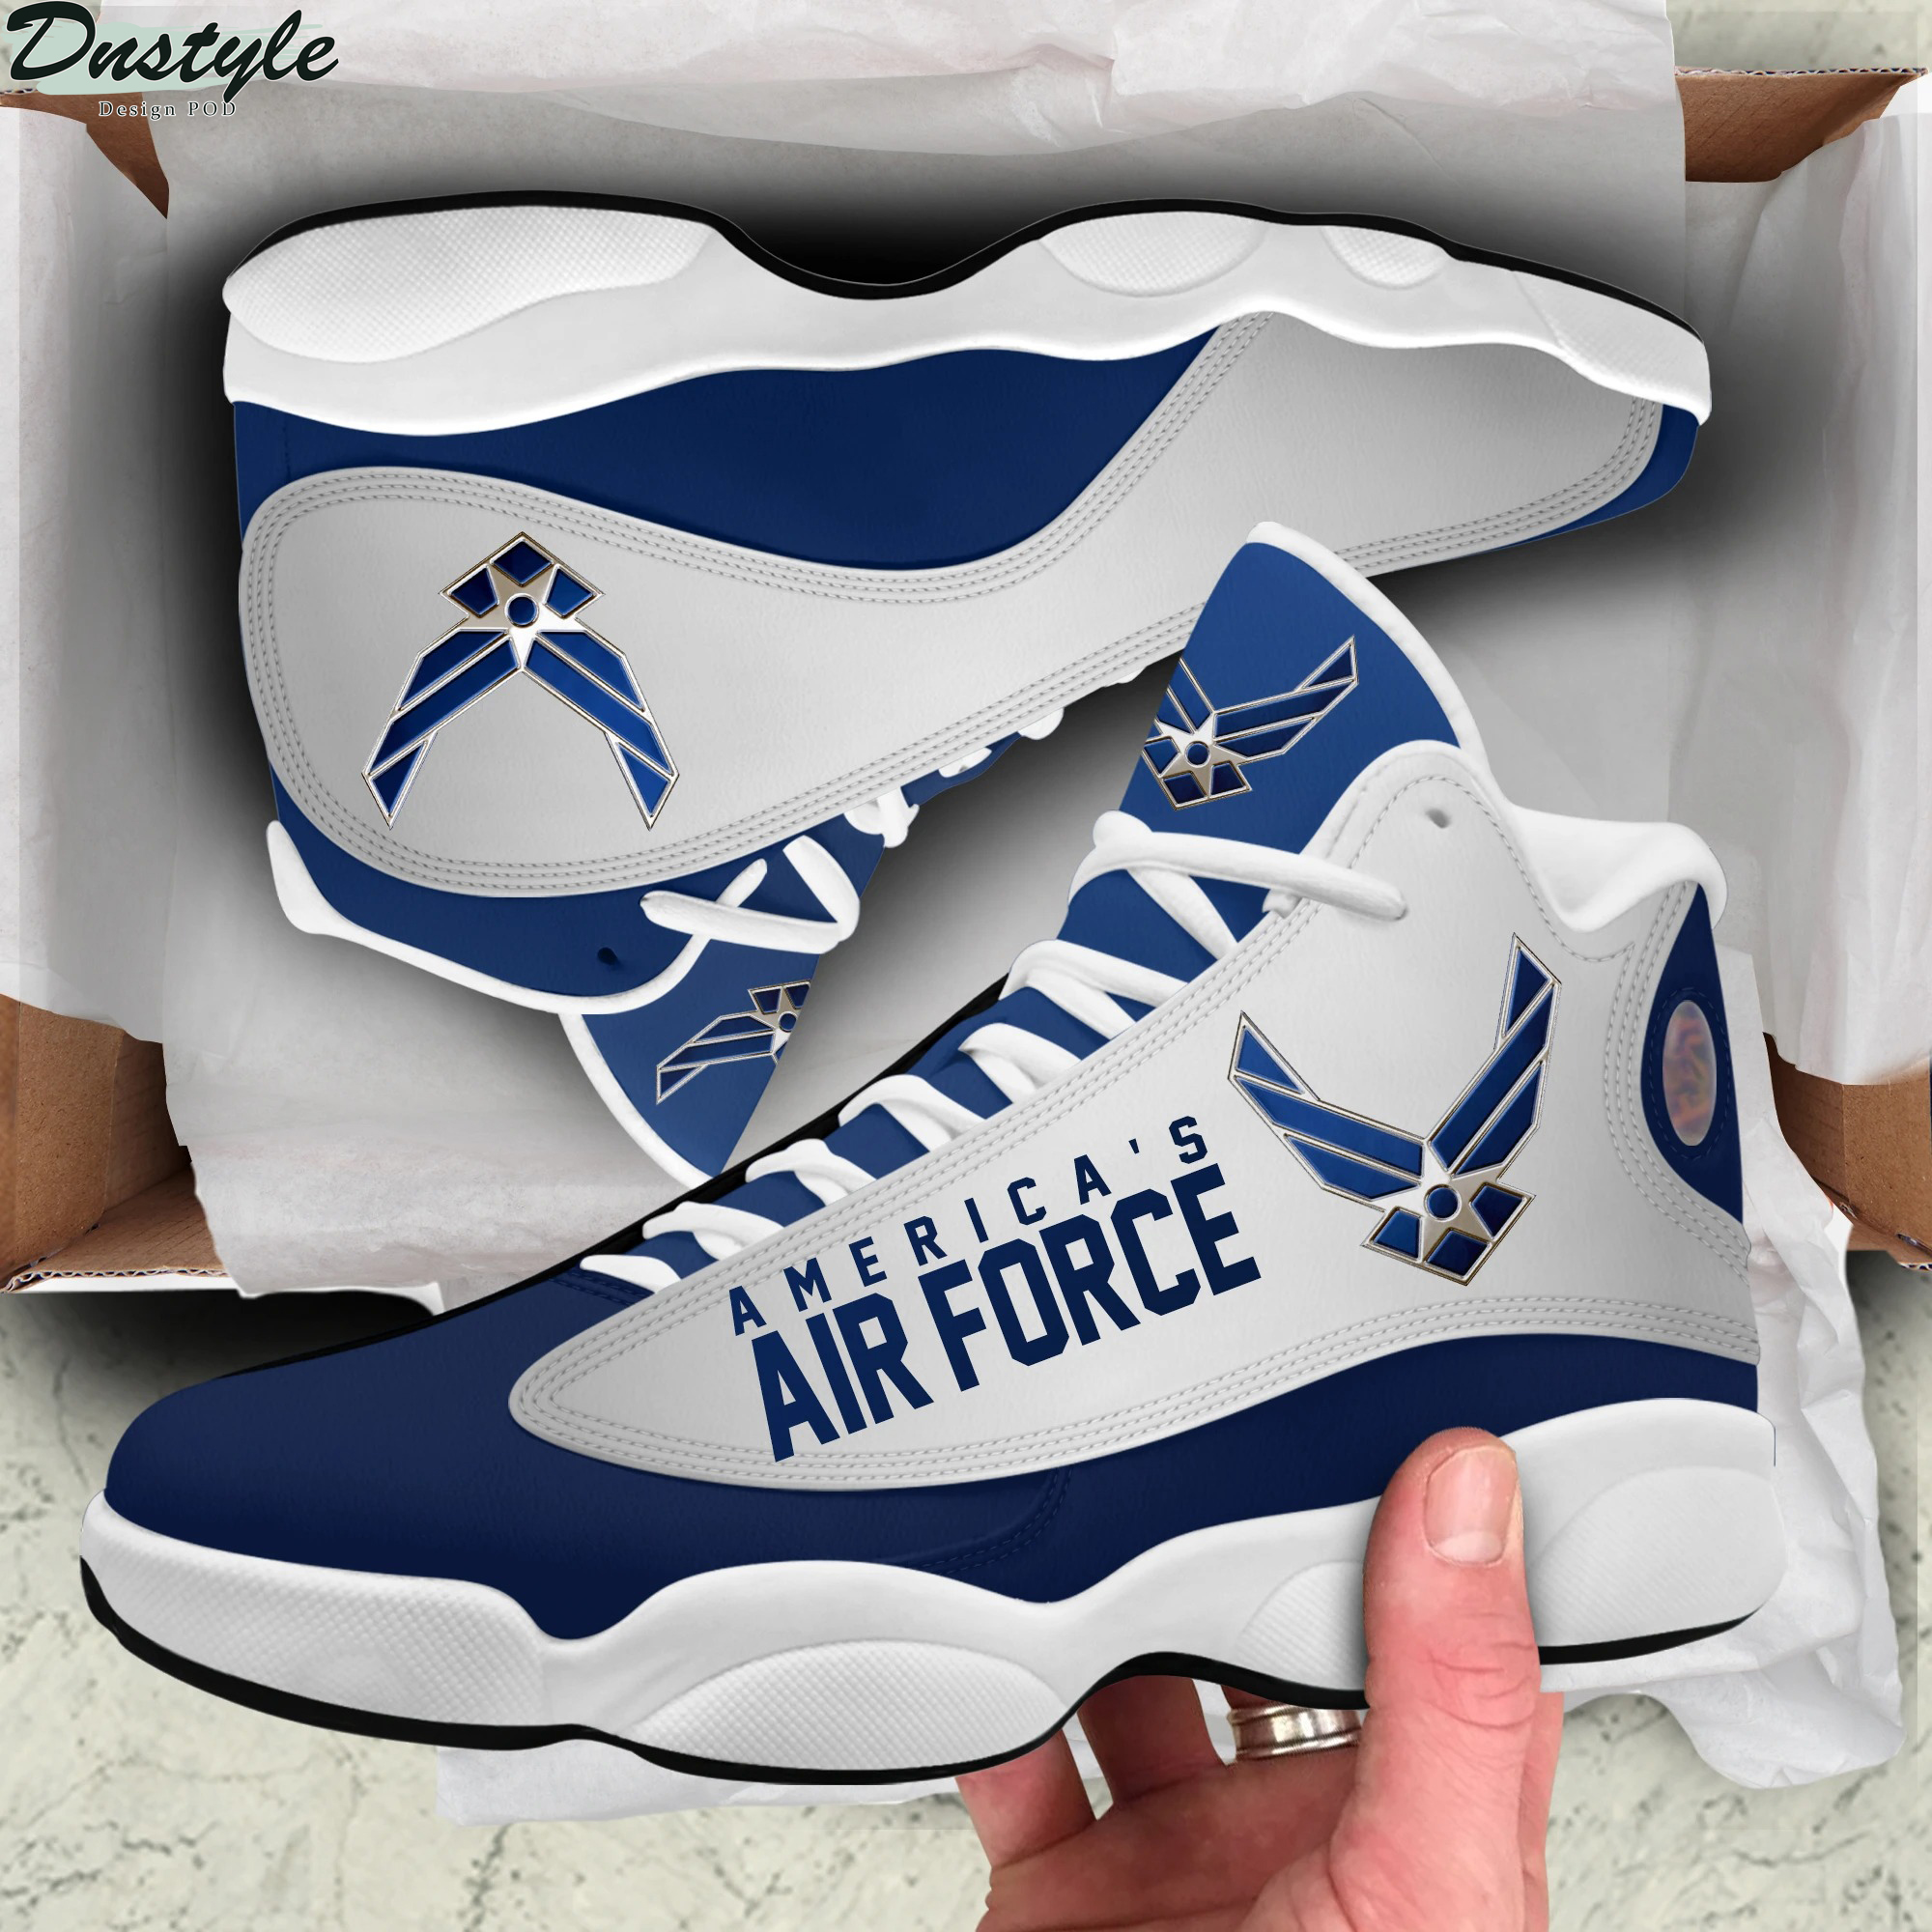 America's Air Force air jordan 13 sneaker